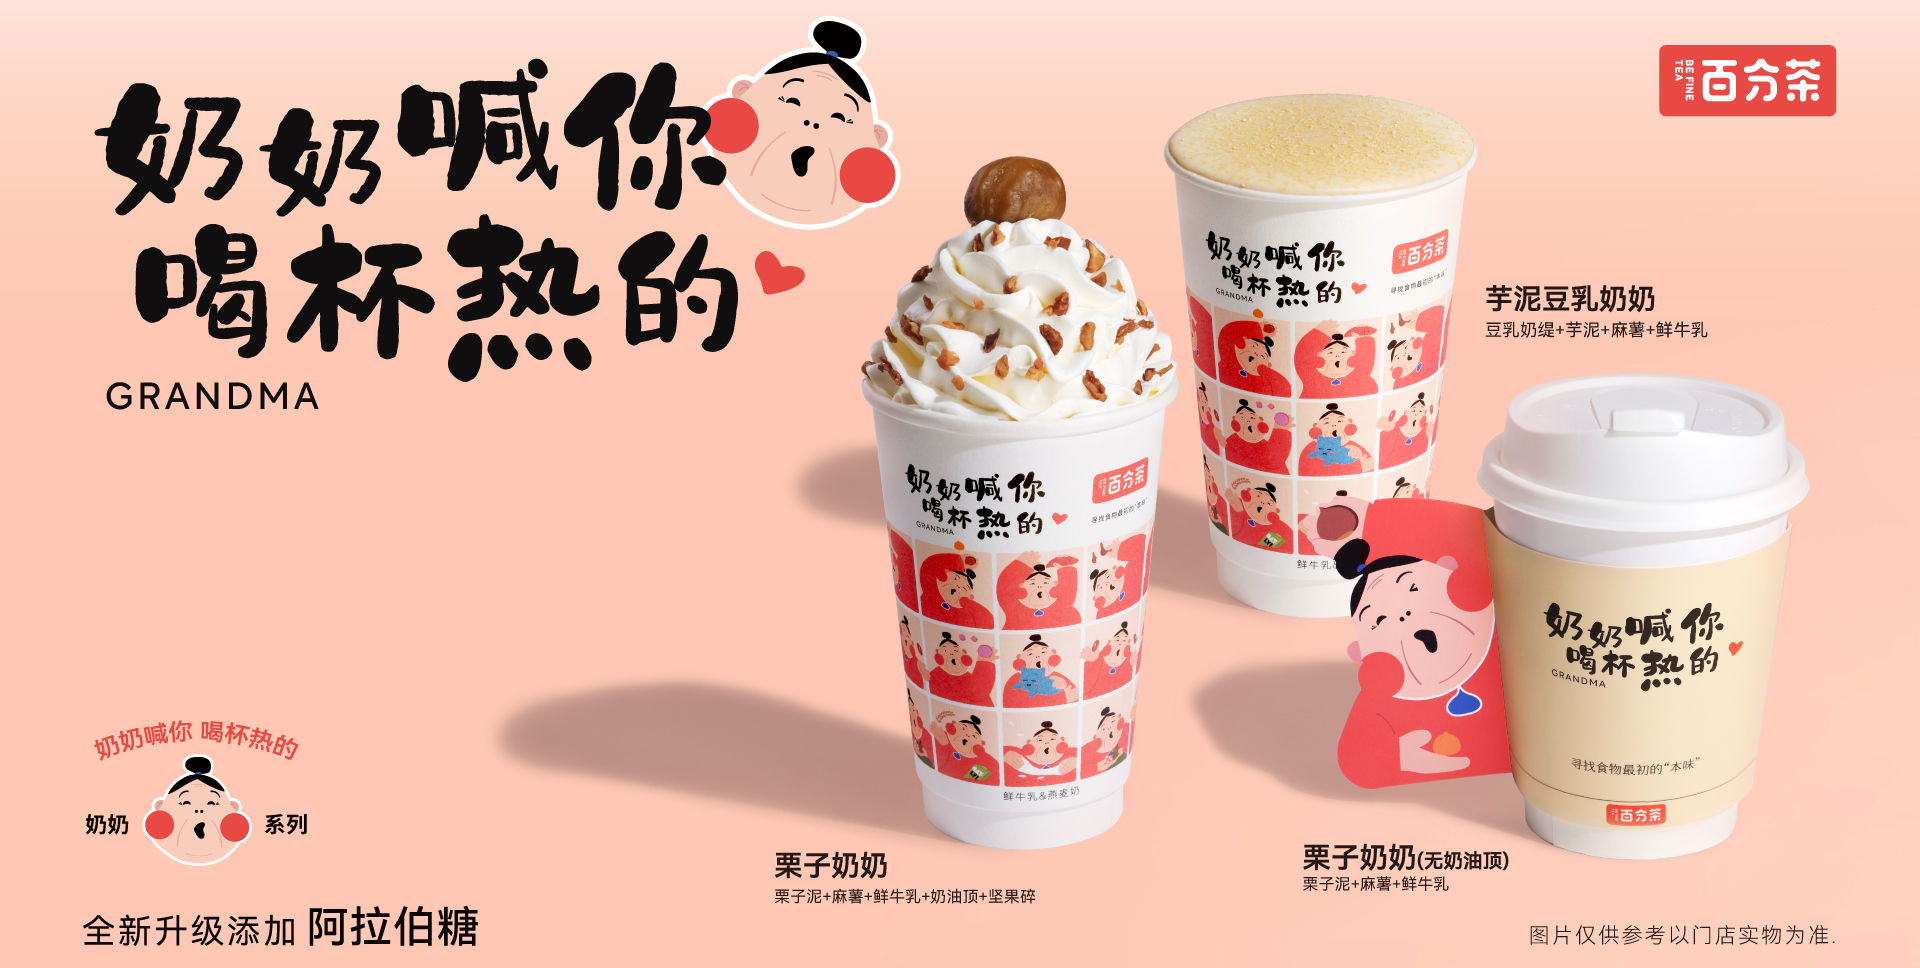 「百分茶」×「上新了故宫」推出“东方味觉系列“茶饮-FoodTalks全球食品资讯